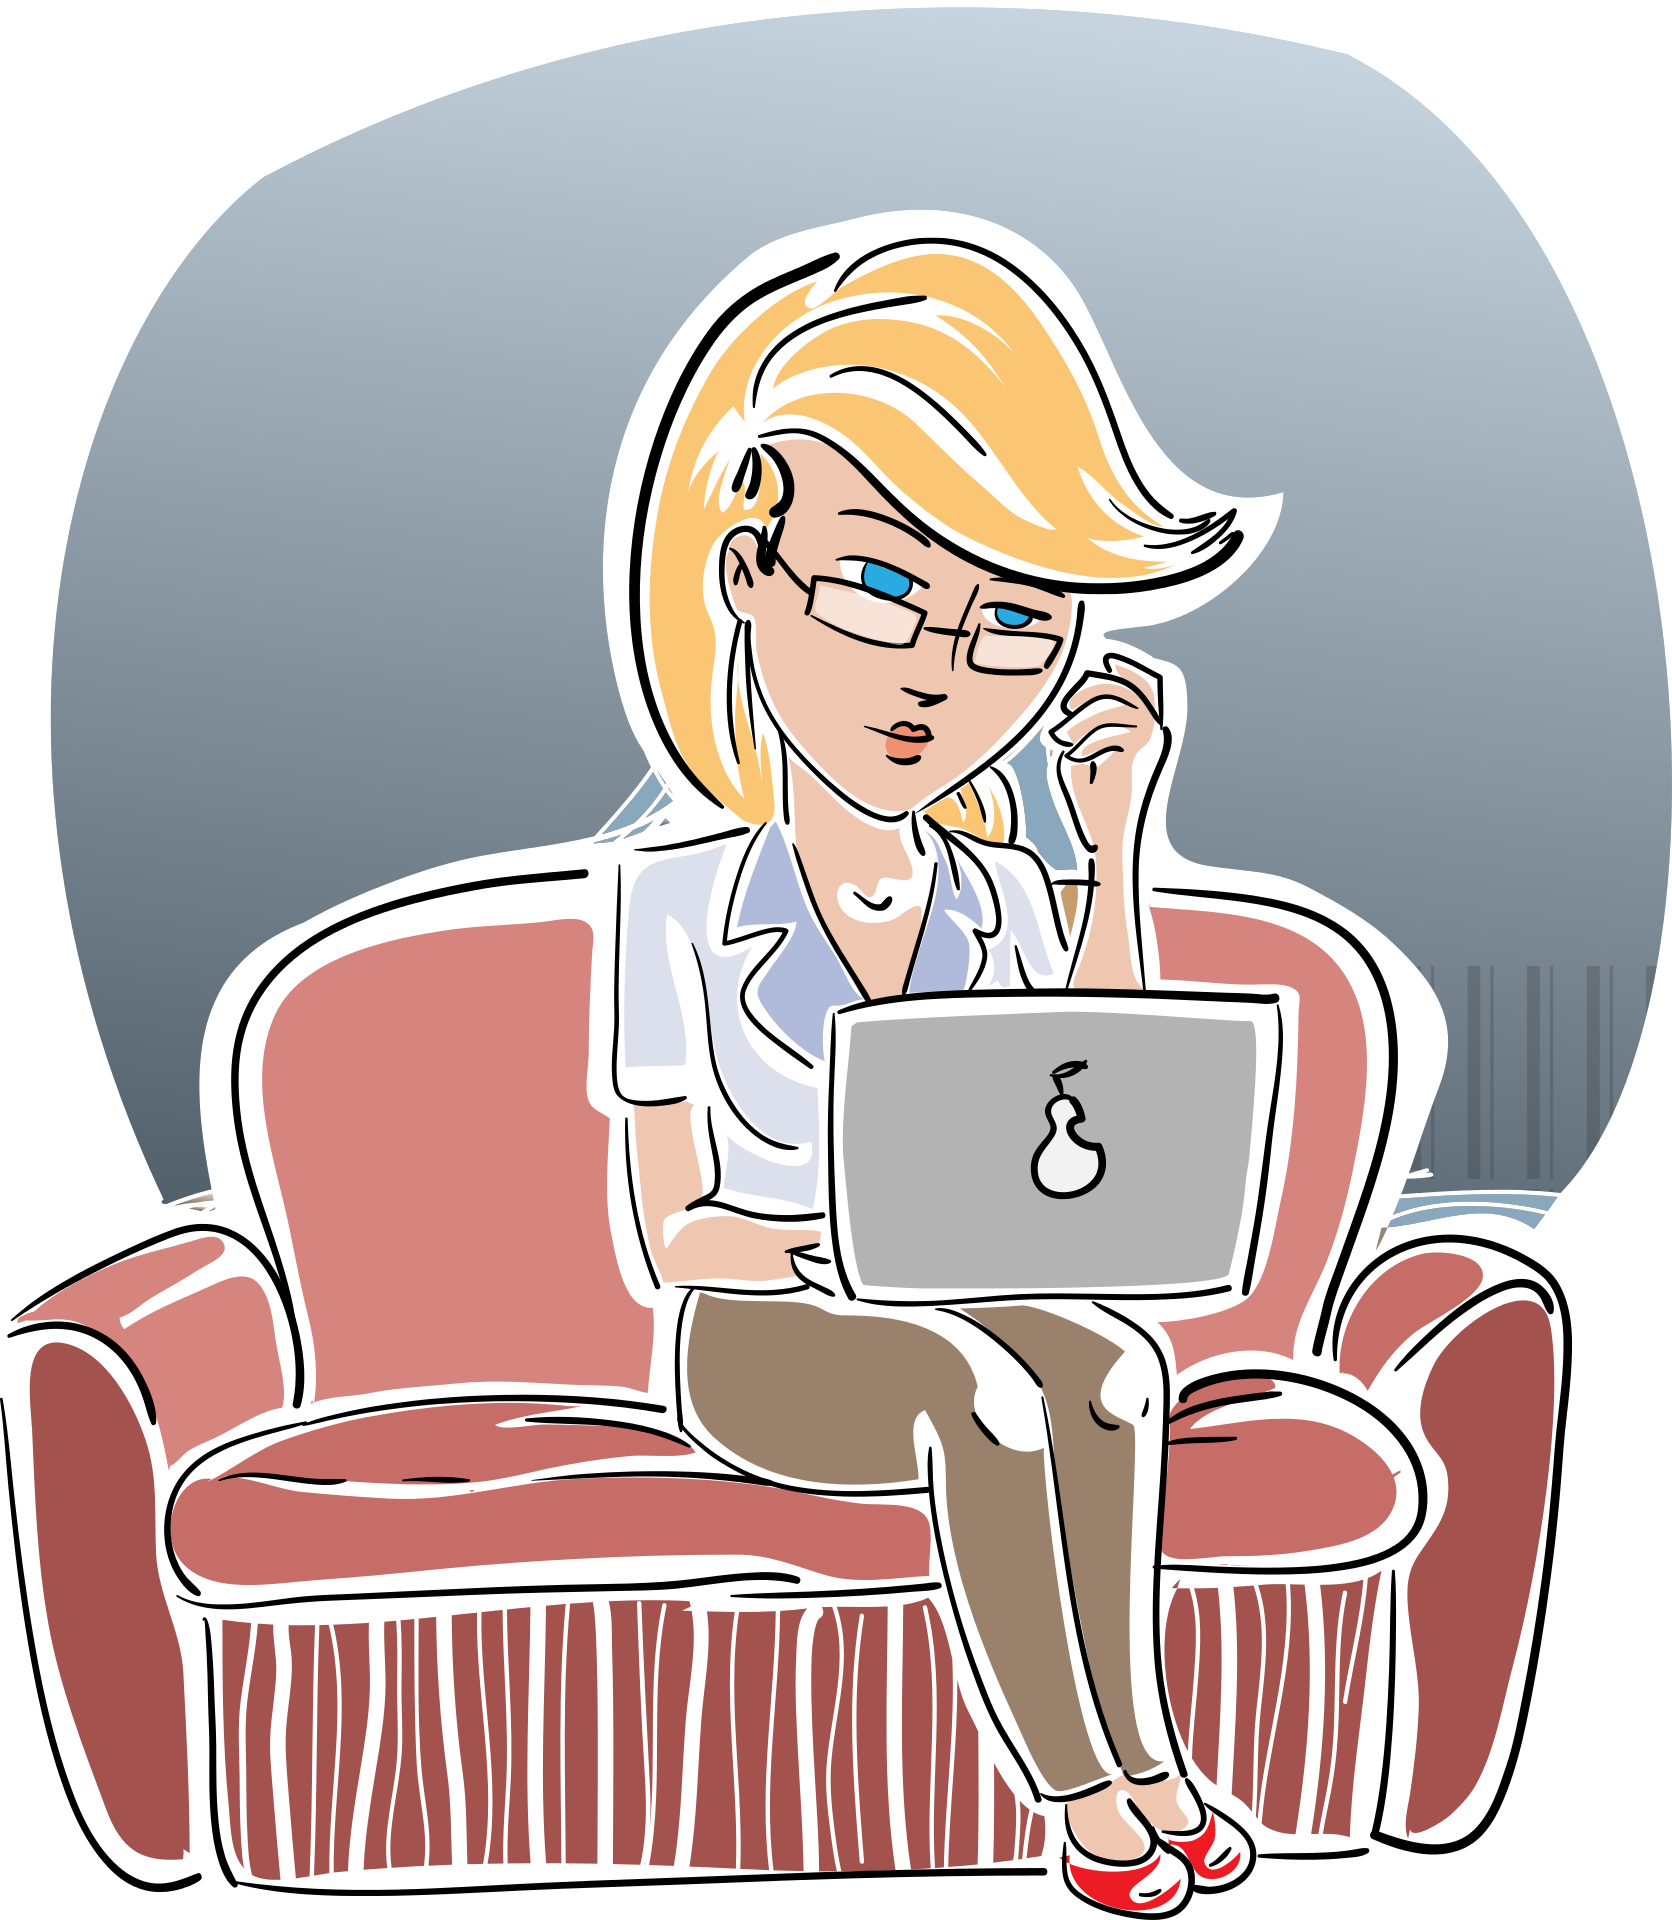 Frau mit blonden Haaren sitzt auf einer Couch und arbeitet an einem Laptop, während sie eine Brille trägt und ein Telefon in der Hand hält.